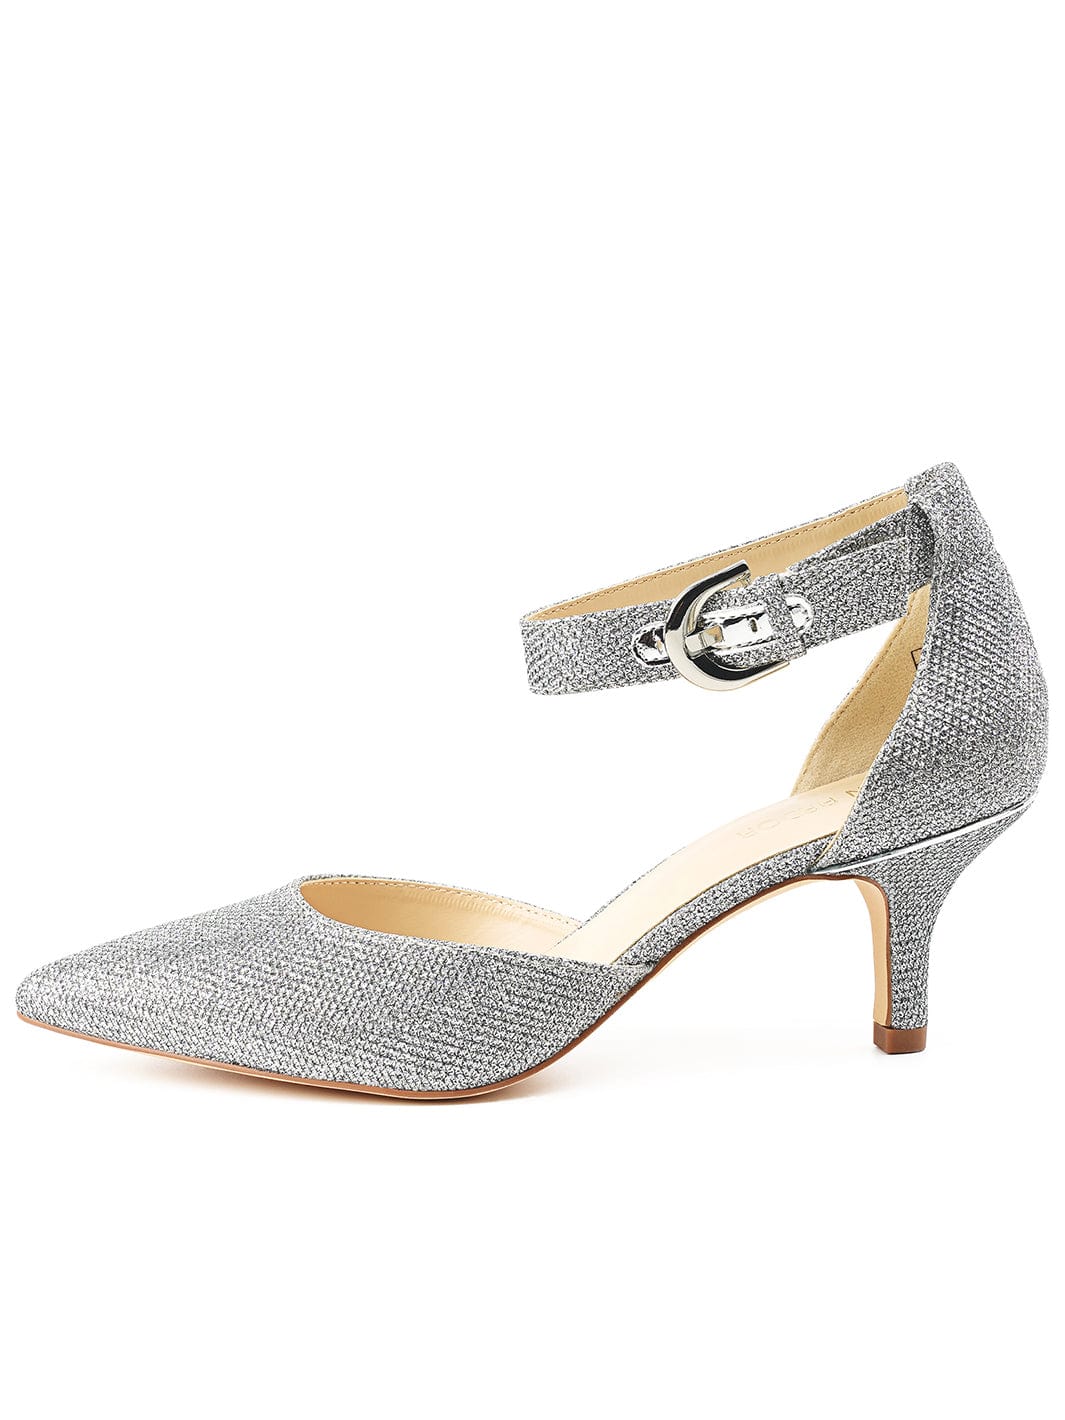 Wide Fit Silver Glitter Bow Kitten Heel Sandals | New Look